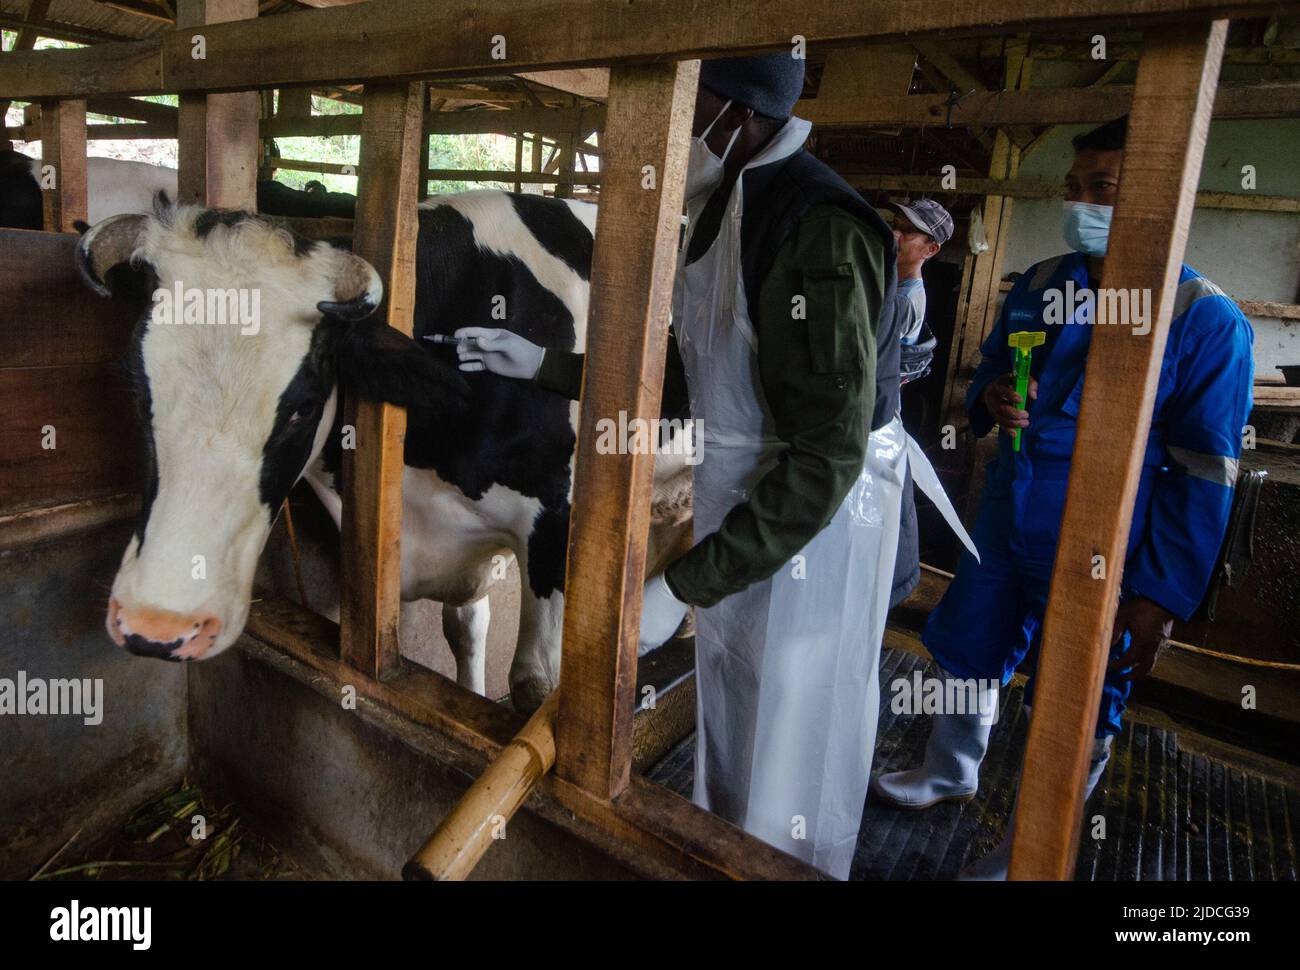 (220620) -- JAVA OCCIDENTAL, 20 de junio de 2022 (Xinhua) -- Un miembro del personal del Centro de Salud Animal da una dosis de vacuna a una vaca durante un programa nacional de vacunación de ganado contra la fiebre aftosa en la aldea de Cilembu, en el distrito de Sumedang, Java Occidental, Indonesia, 20 de junio de 2022. Indonesia ha lanzado una campaña de vacunación contra la reaparición de la mortal fiebre aftosa en el ganado de todo el país. La enfermedad vírica altamente contagiosa entre los animales de pezuña, incluidos el ganado bovino, ovino, porcino y caprino, se ha propagado a través de 181 municipios después de que se encontrara inicialmente en t Foto de stock